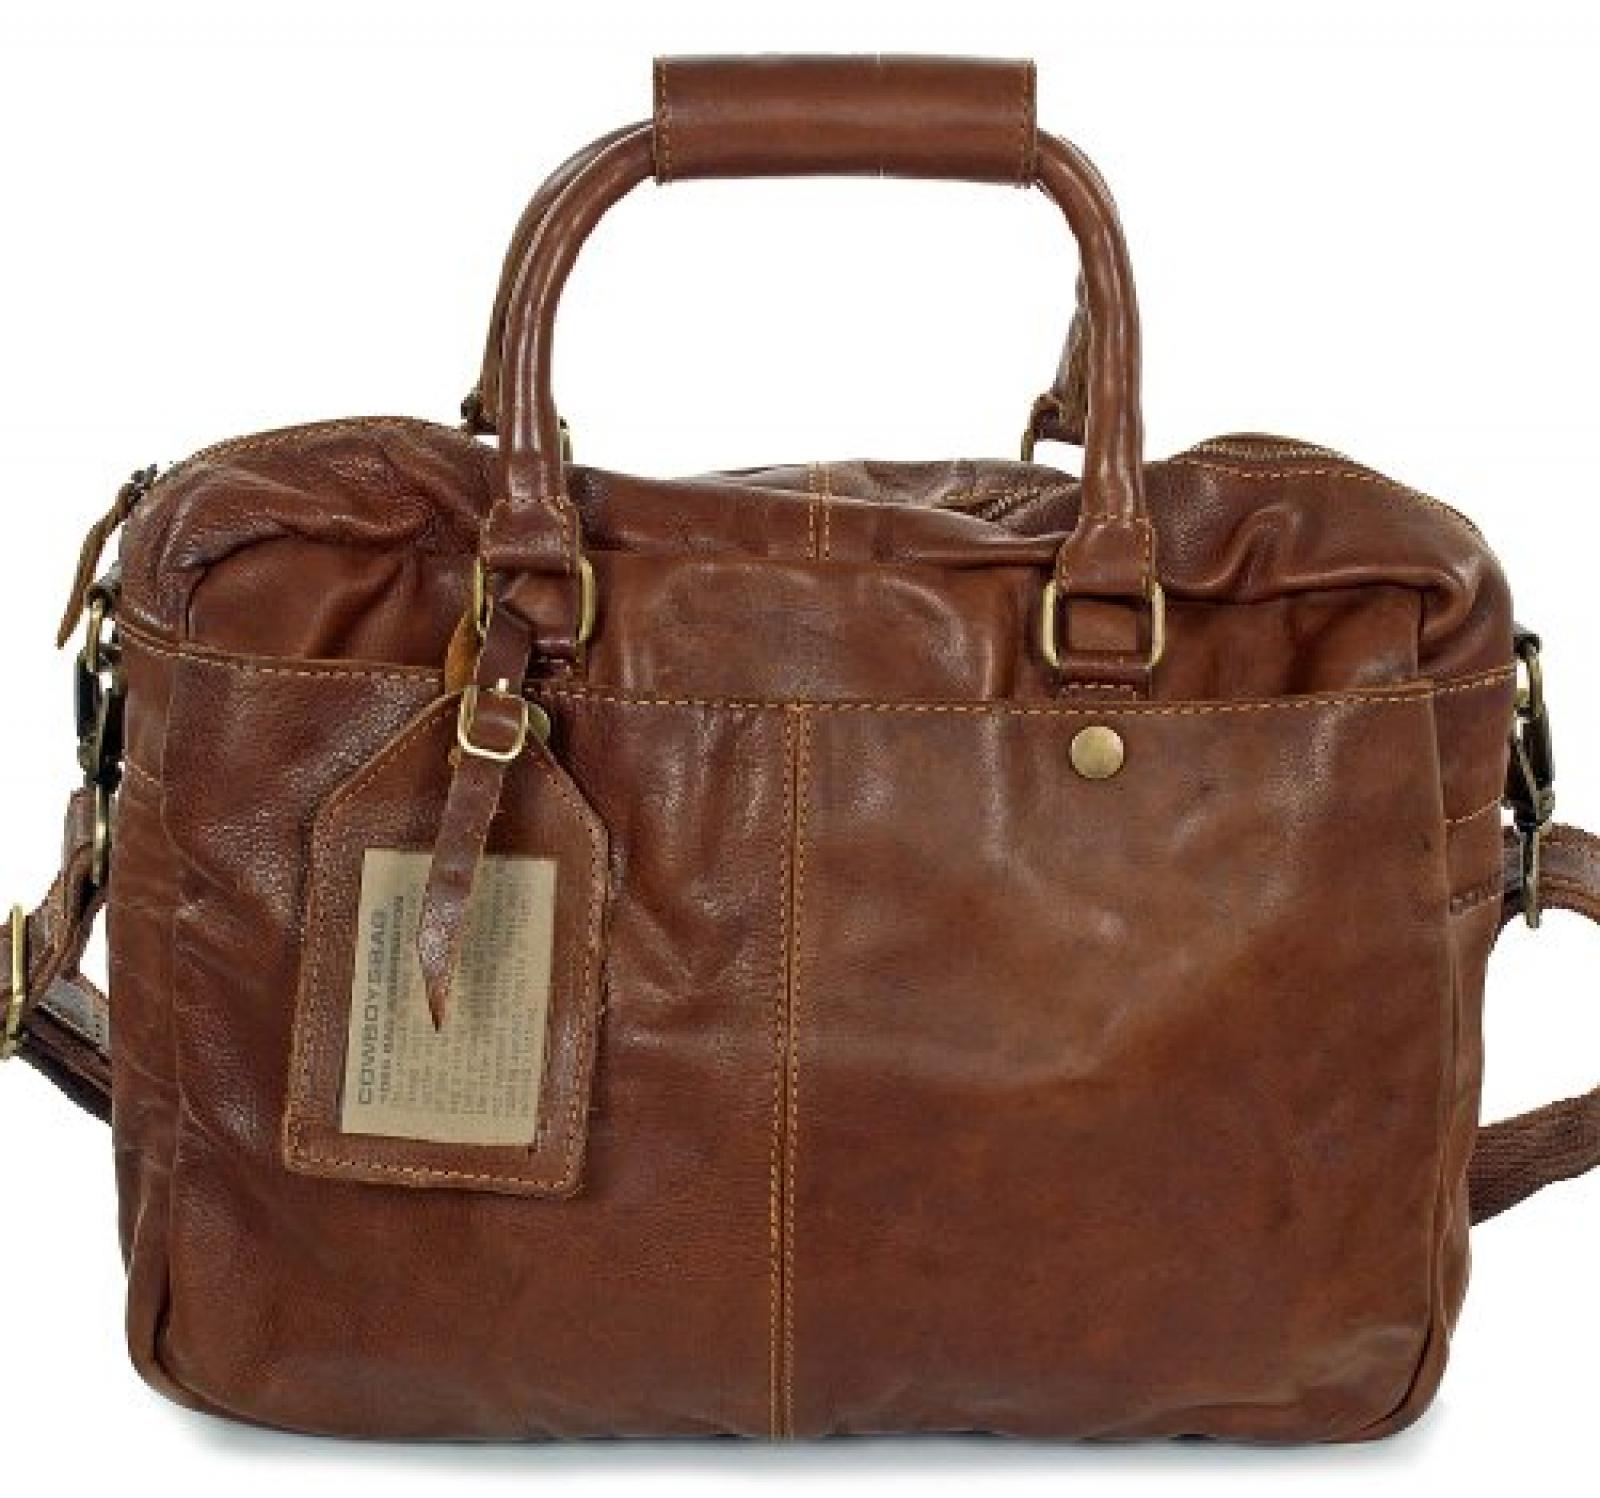 Cowboysbag Washington Unisex Handtasche - Businesstasche (37x28x11 cm), Farben:Braun (Cognac) 